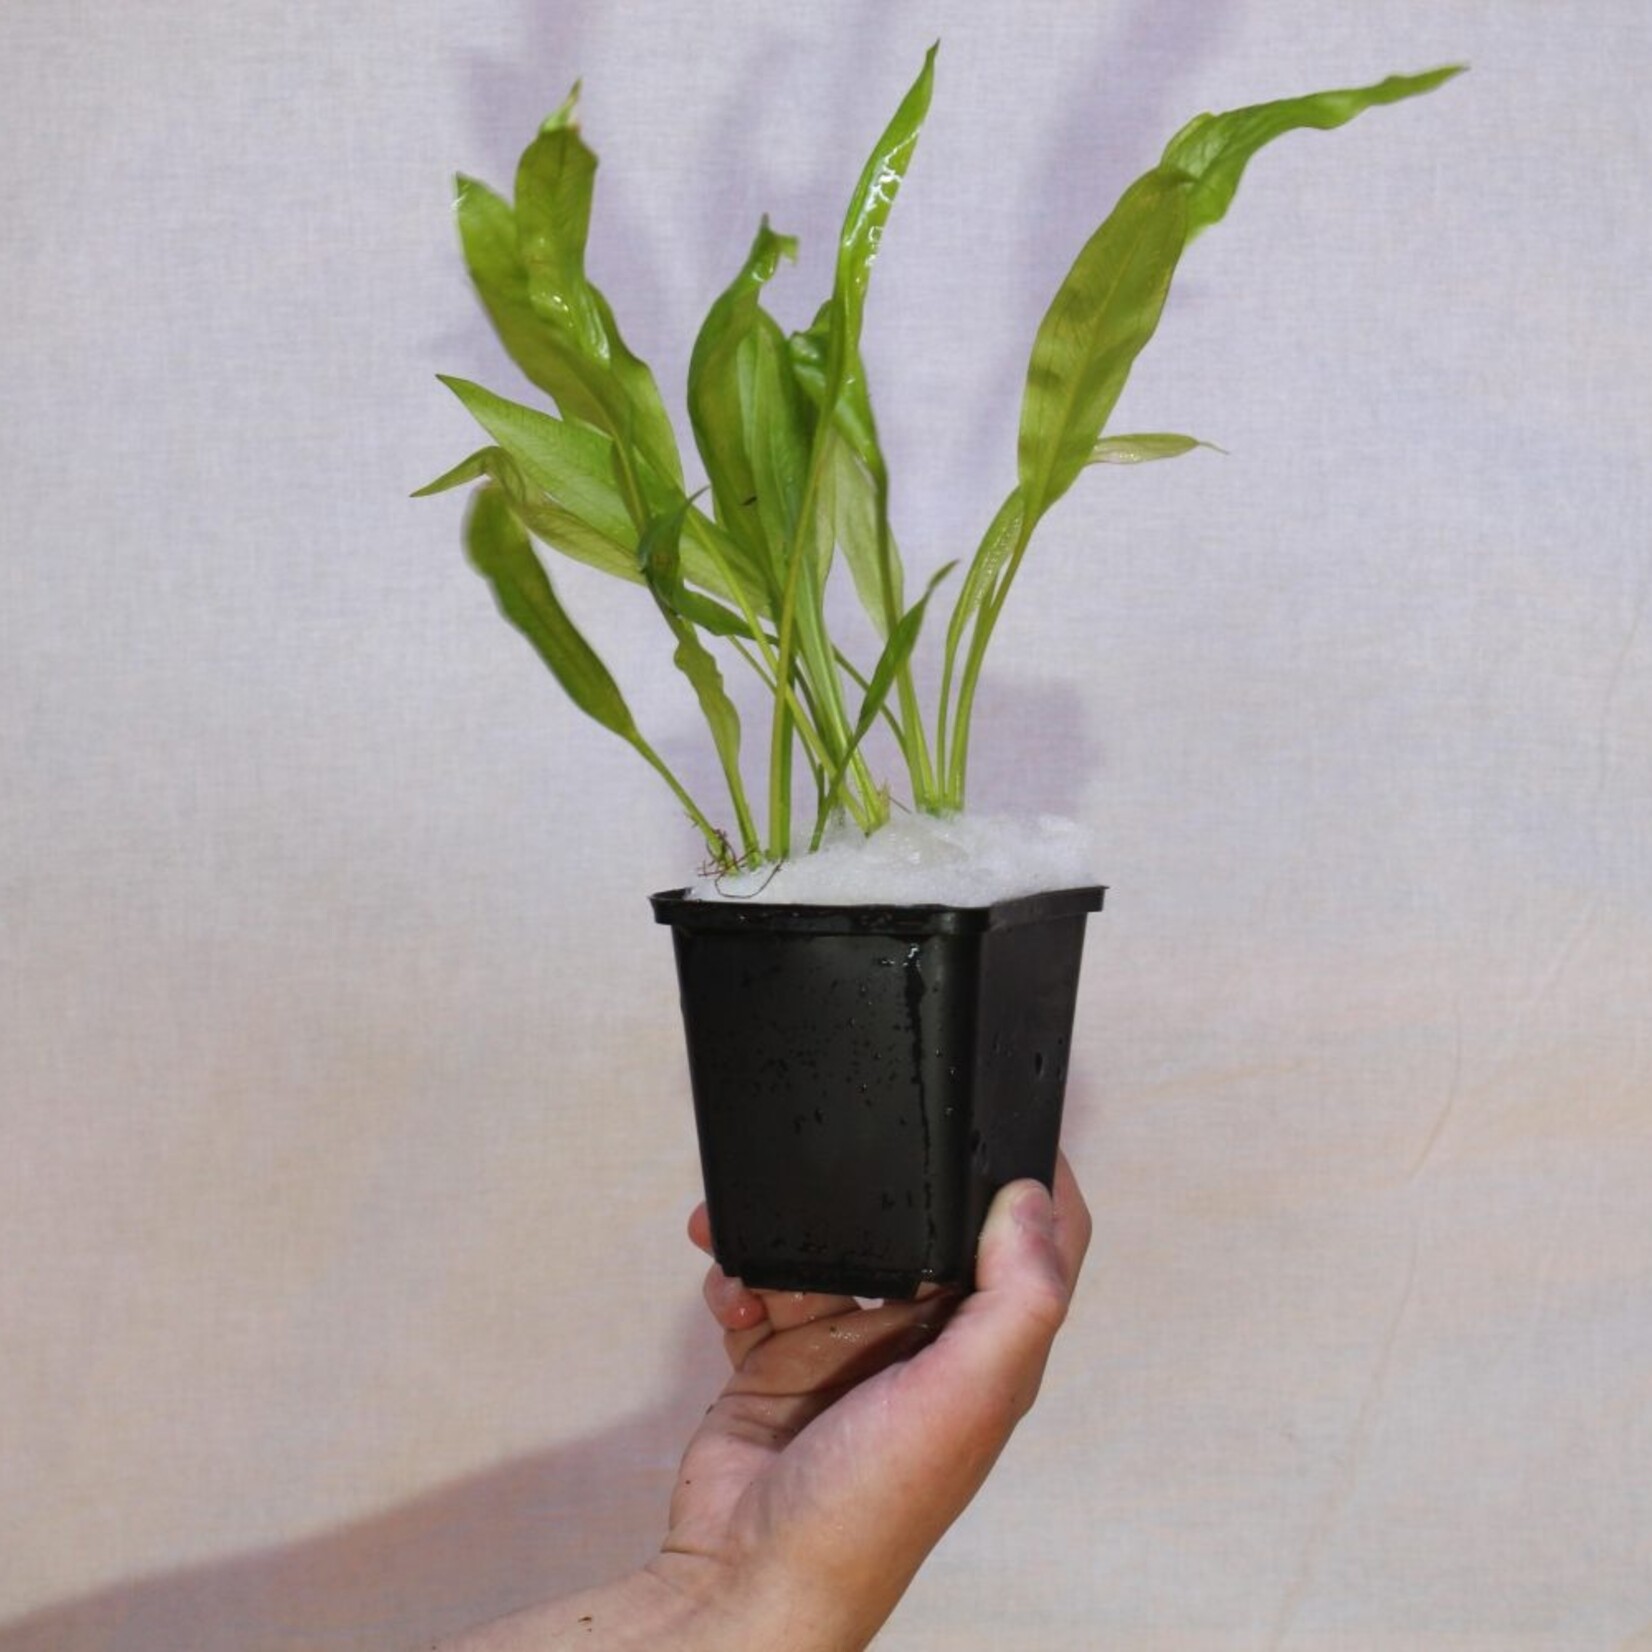 Echinodorus Bleheri Moederplant